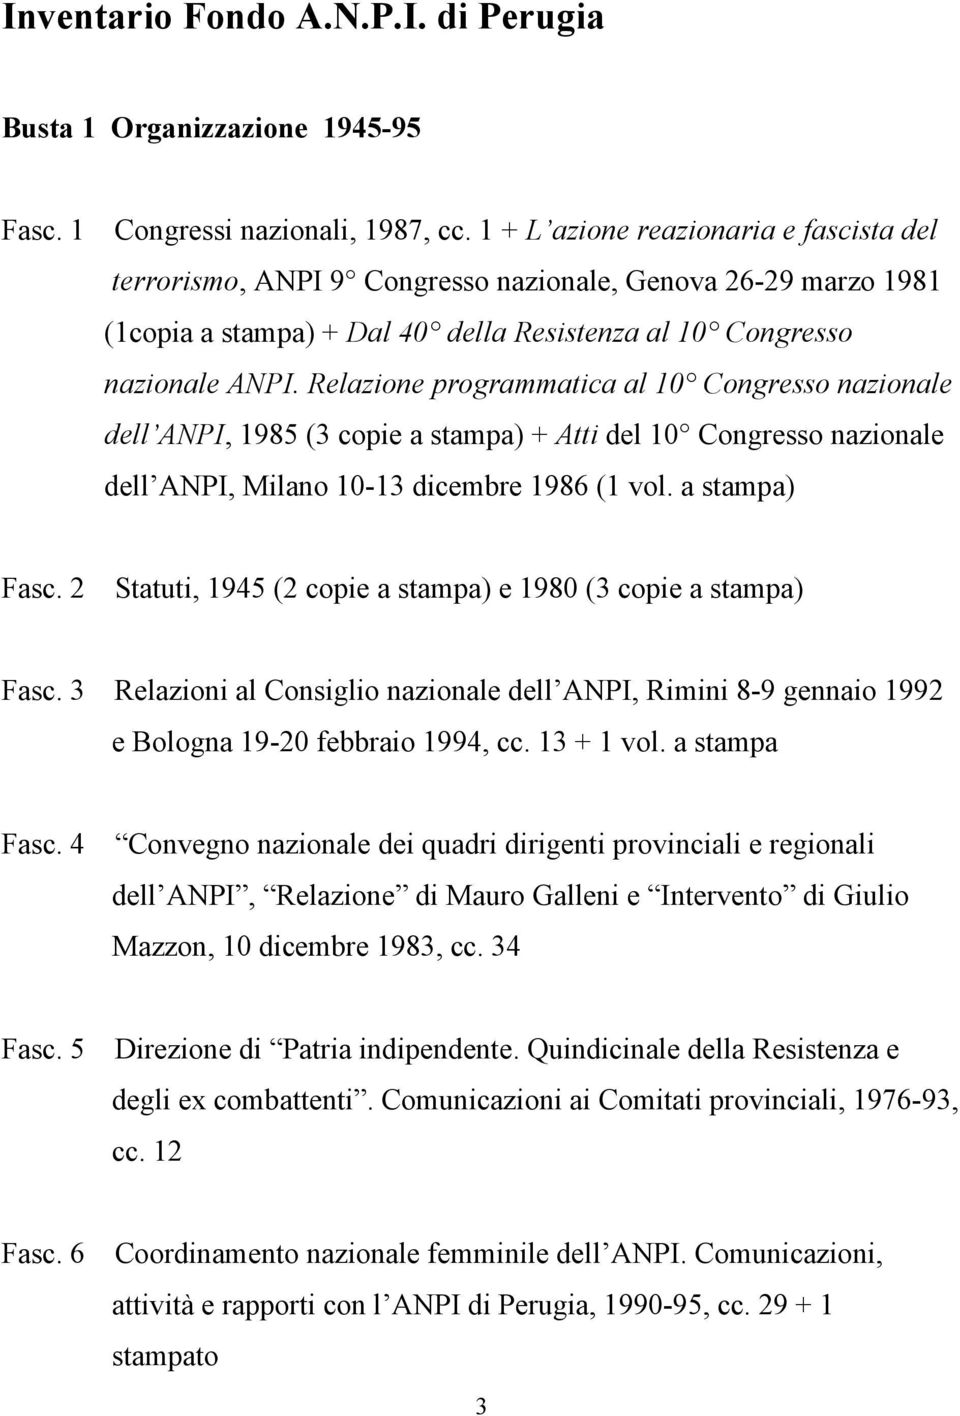 Relazione programmatica al 10 Congresso nazionale dell ANPI, 1985 (3 copie a stampa) + Atti del 10 Congresso nazionale dell ANPI, Milano 10-13 dicembre 1986 (1 vol. a stampa) Fasc.